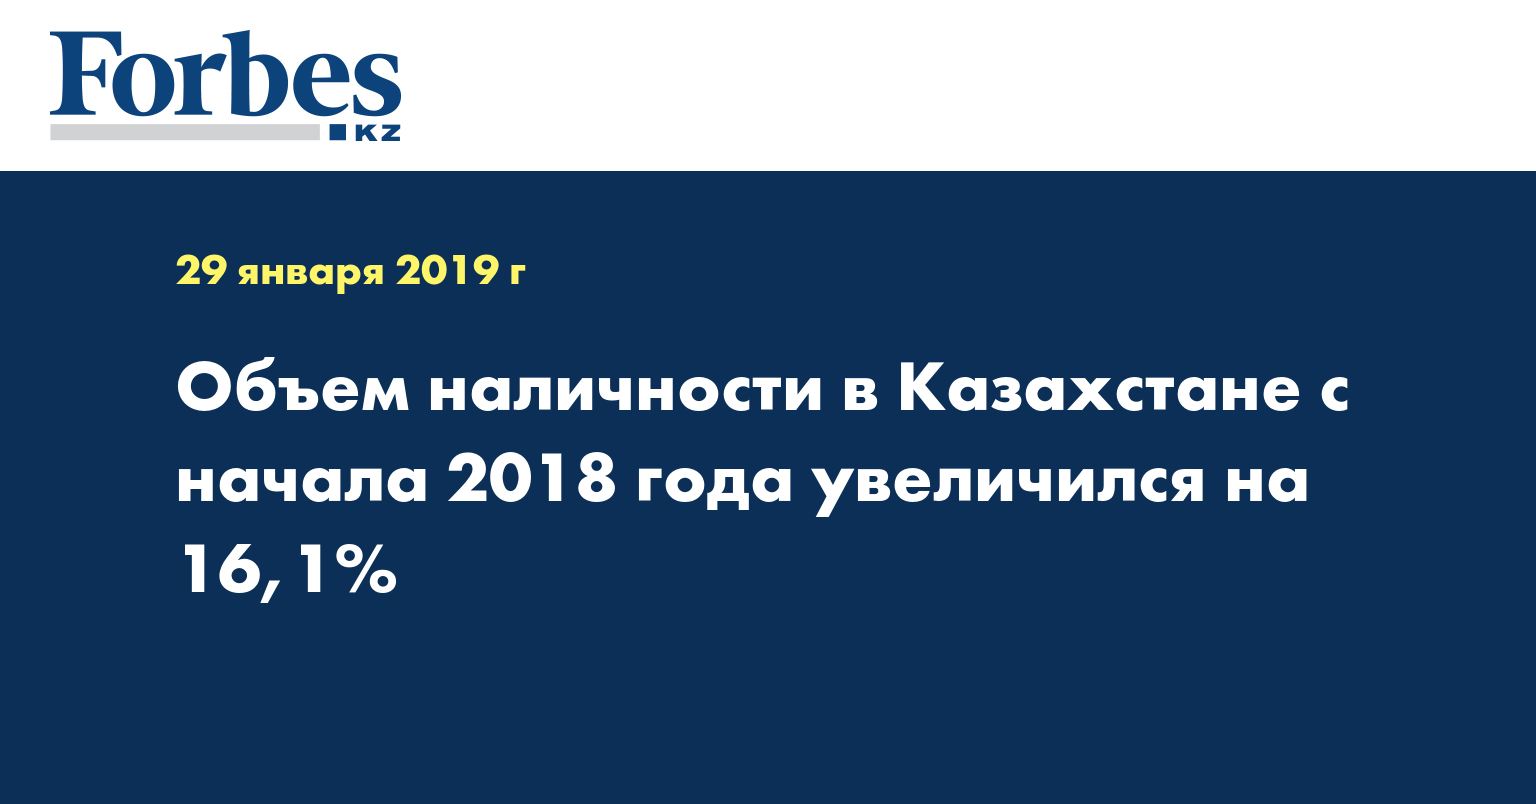 Объем наличности в Казахстане с начала 2018 года увеличился на 16,1%